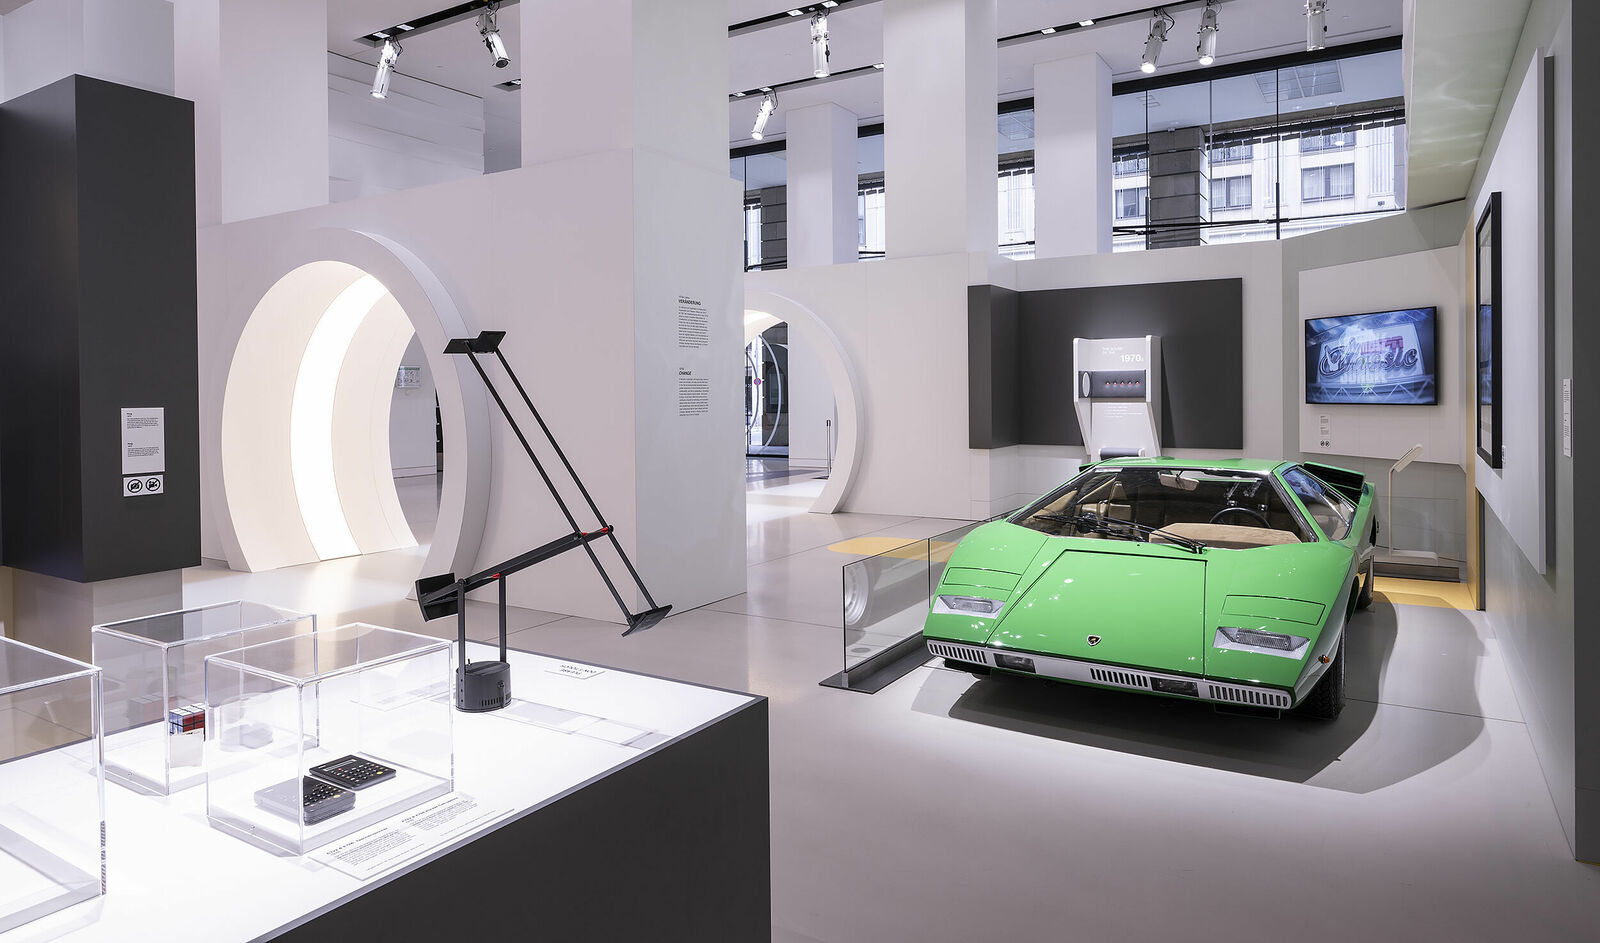 nnenansicht eines Automuseums mit einem limettengrünen Lamborghini im Zentrum, umgeben von Informationsdisplays.